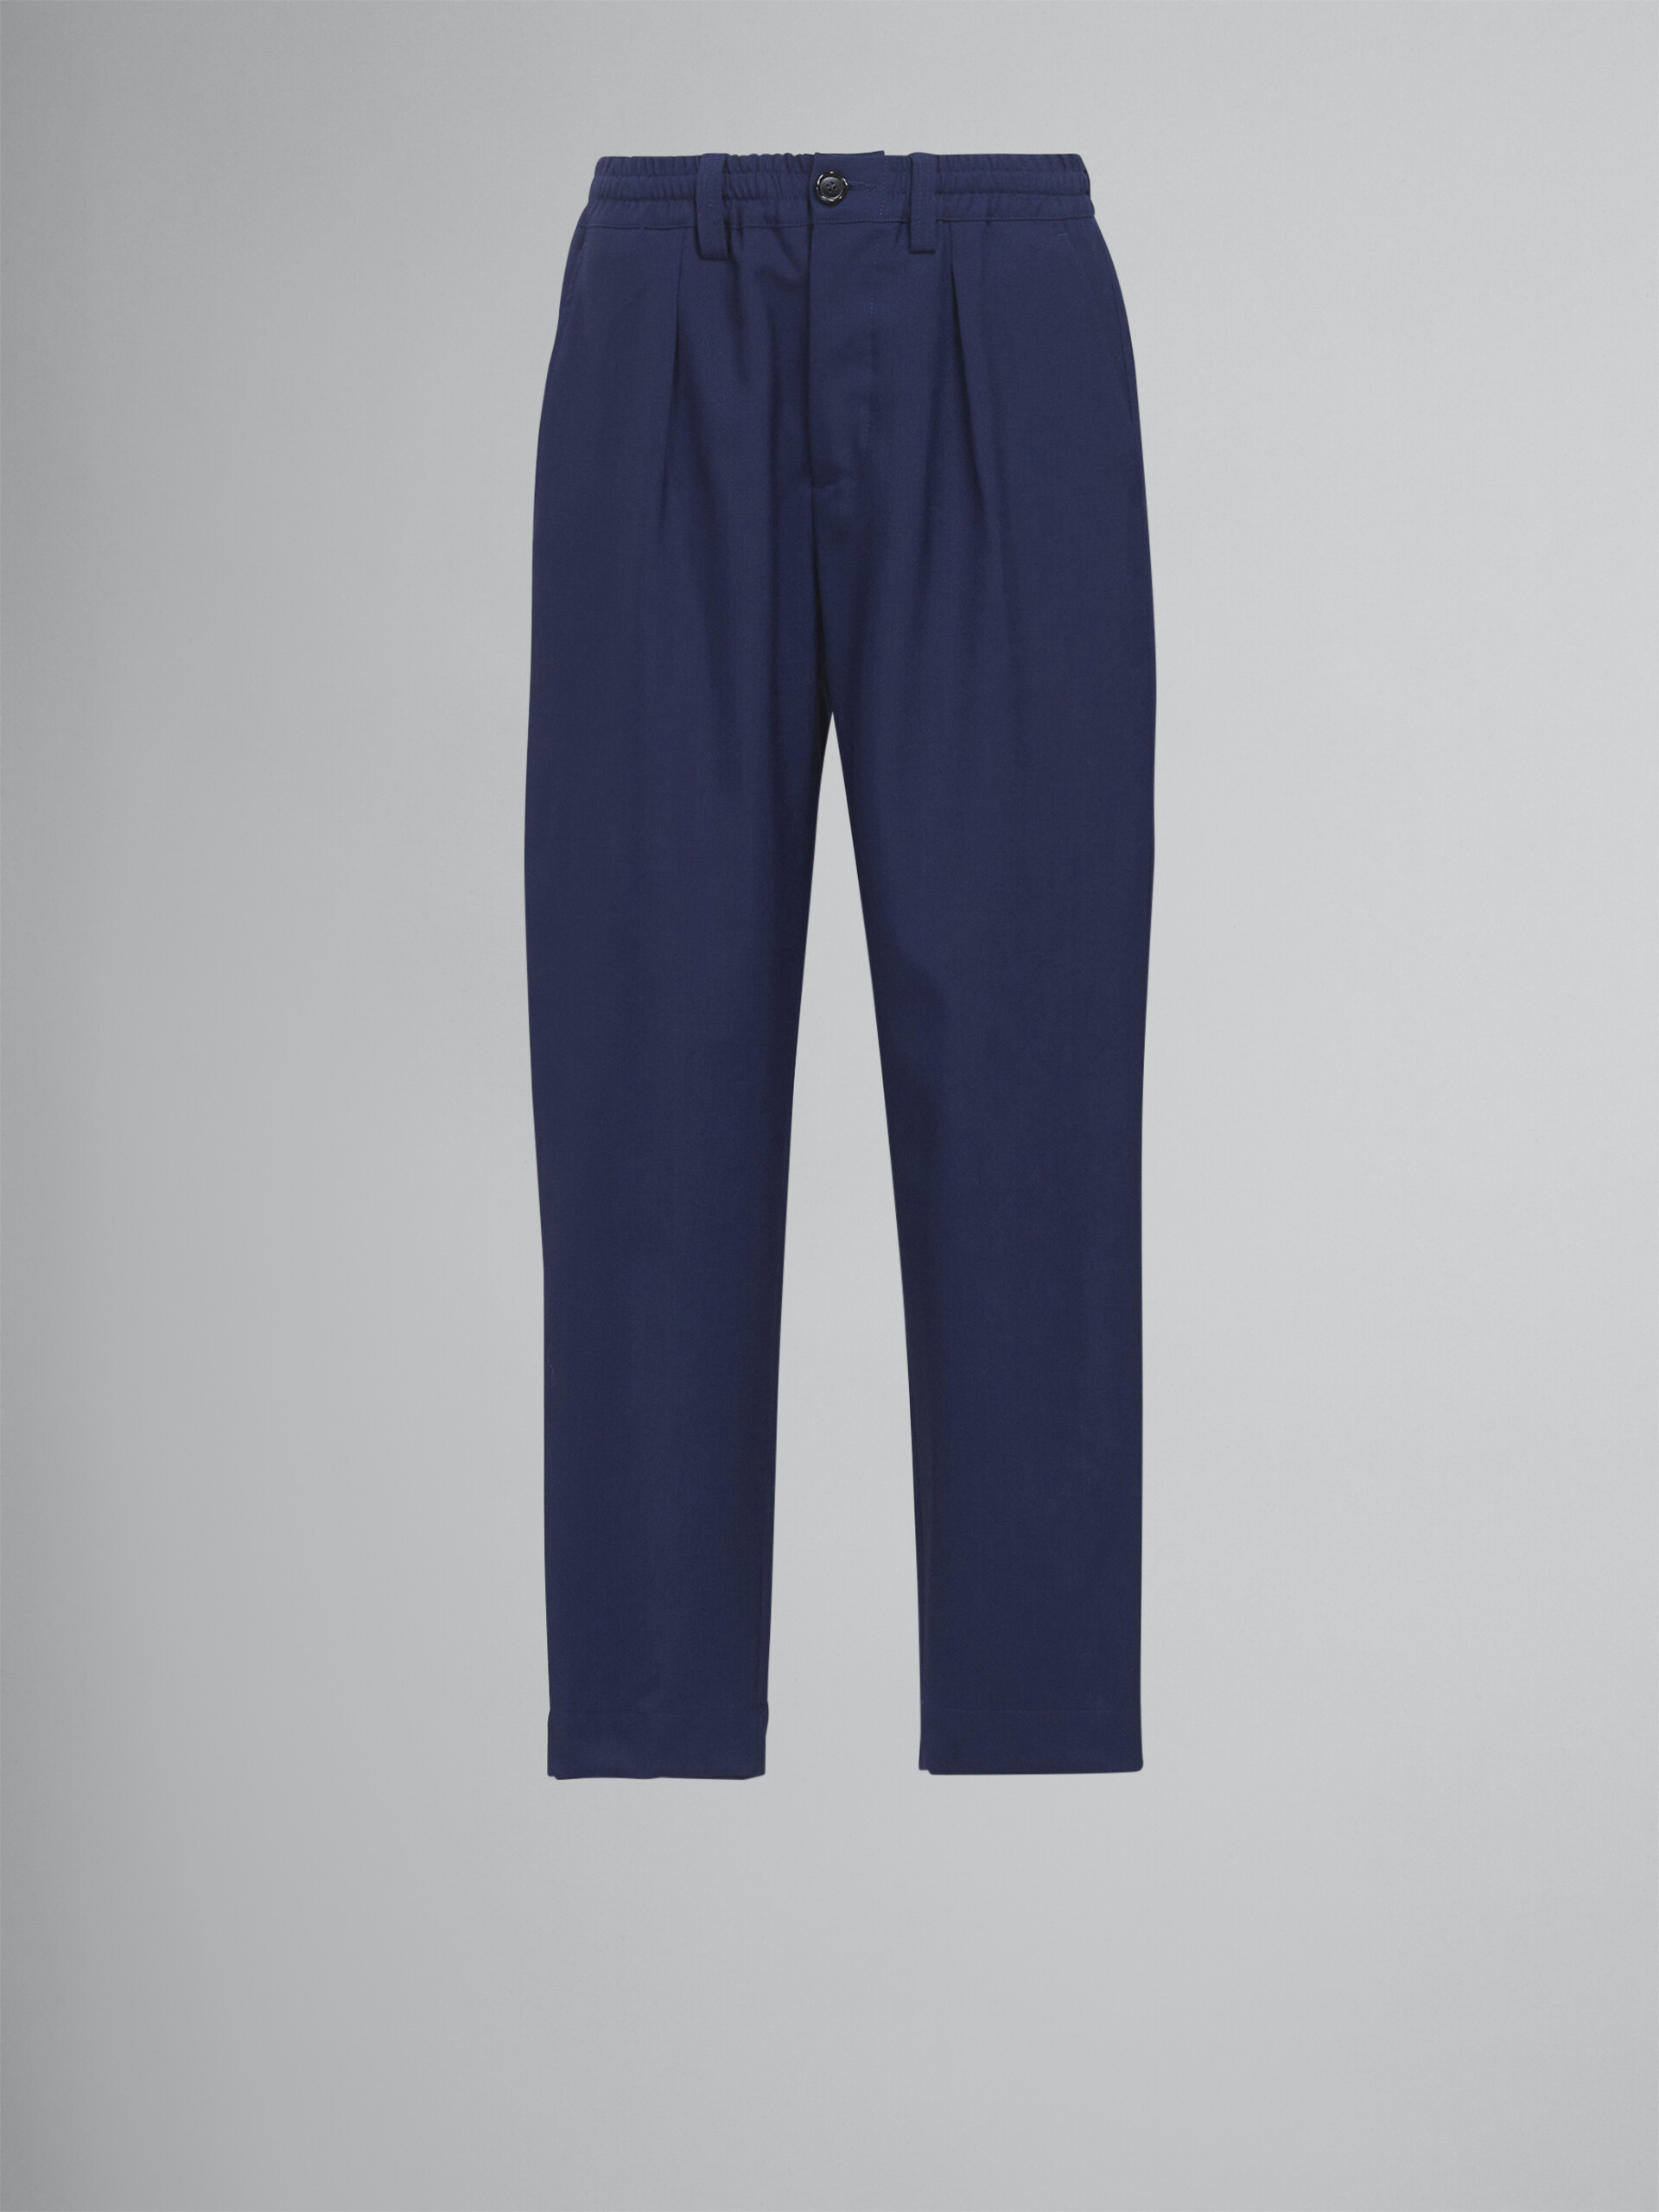 Kurz geschnittene Hose aus blauer Tropenwolle - Hosen - Image 1